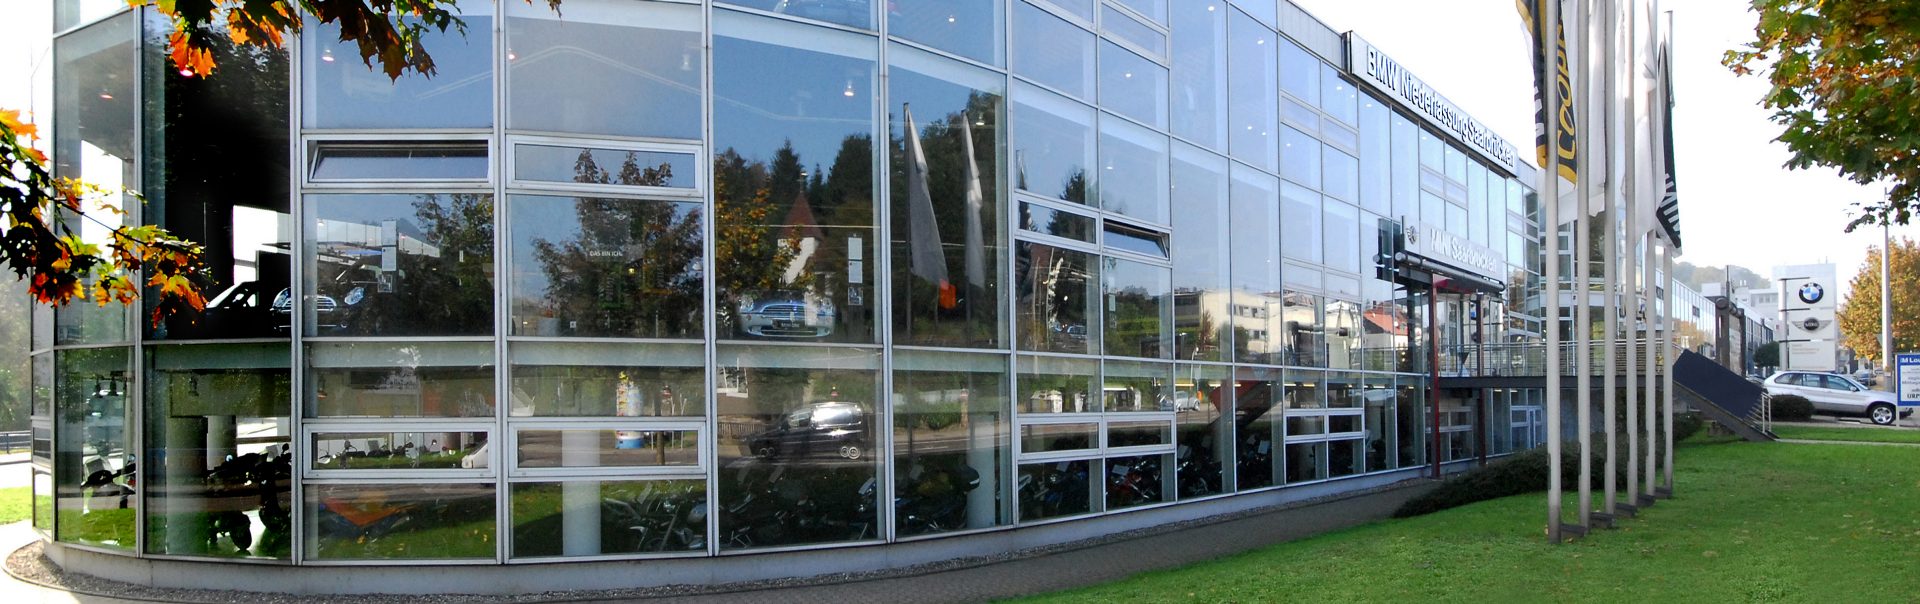 BMW Group, Niederlassung Saarbrücken, Filiale Am Halberg